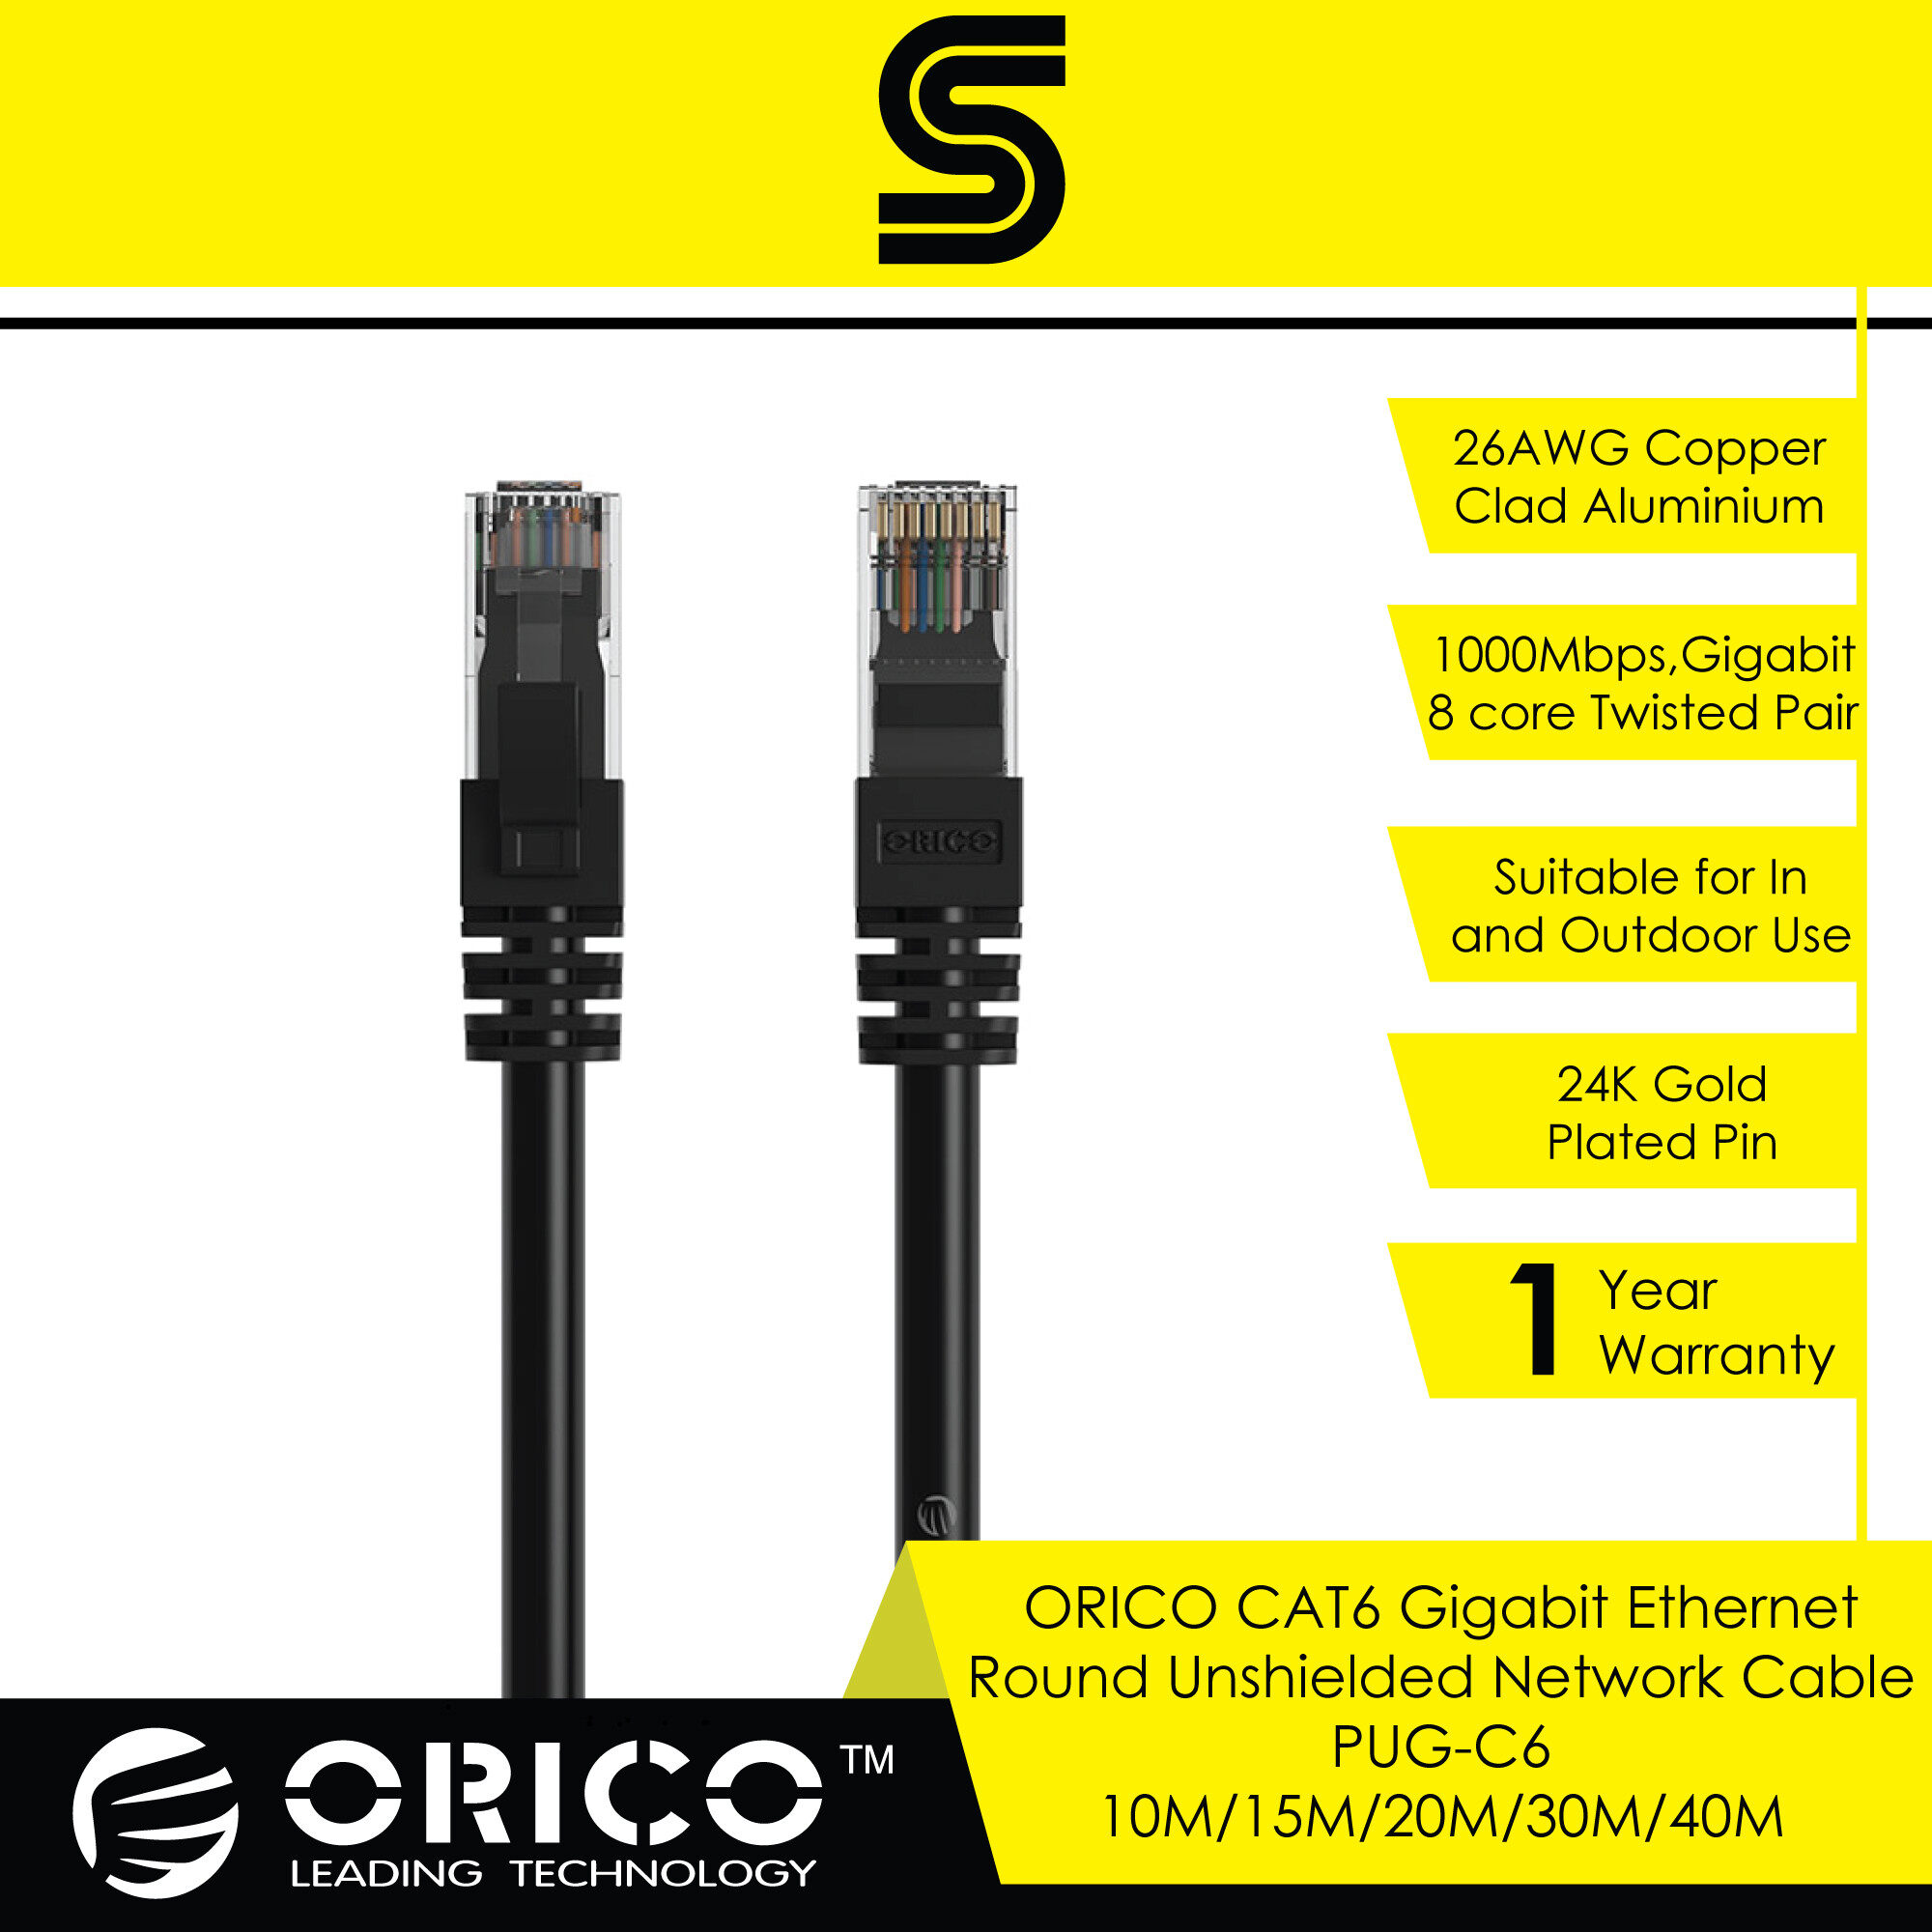 ORICO CAT6 Gigabit Ethernet Round Unshielded Network Cable - PUG-C6 - 10M/15M/20M/30/40M